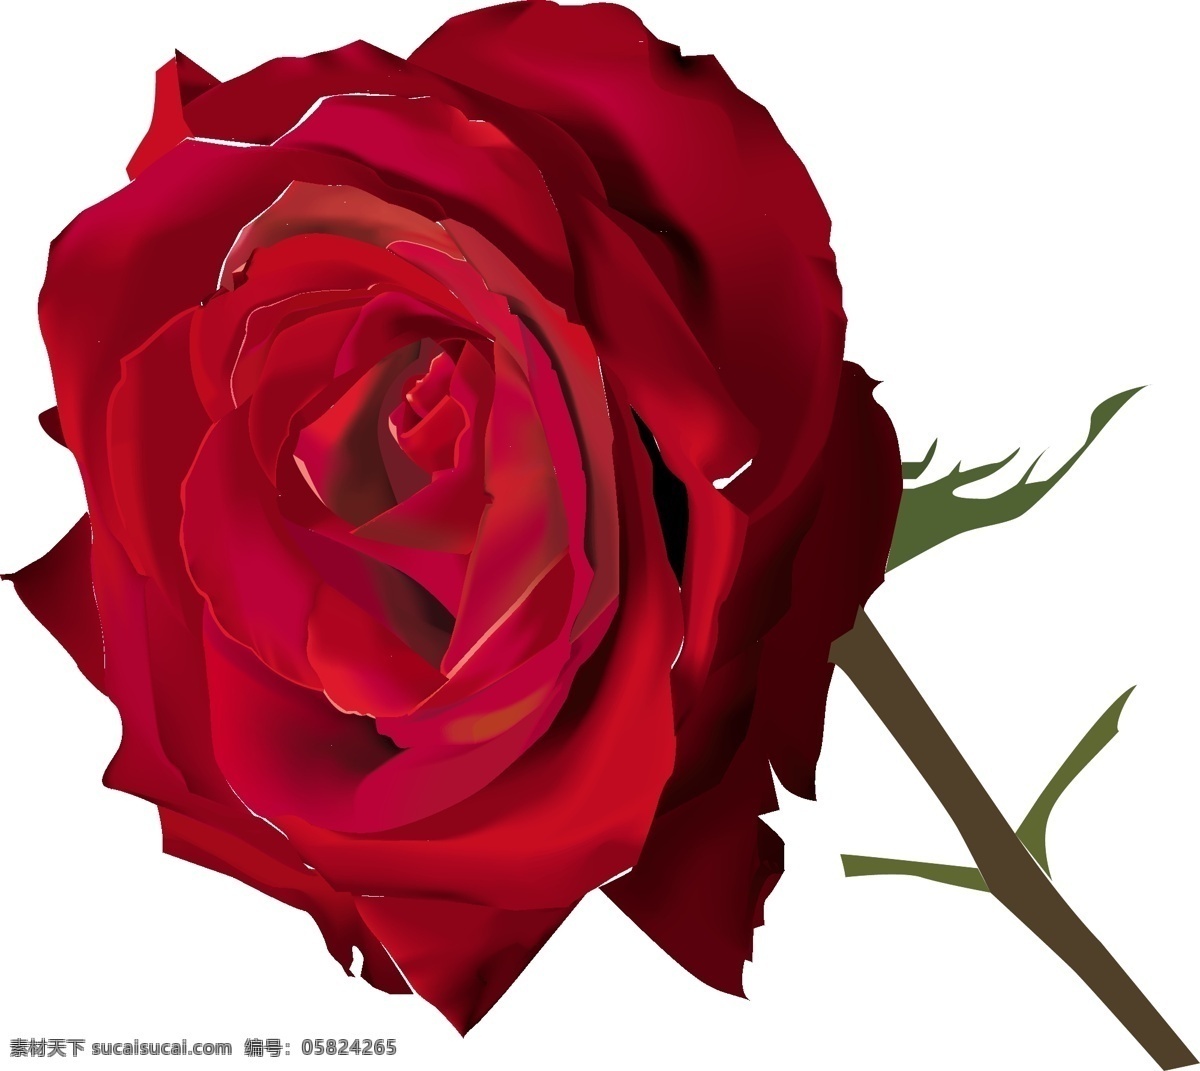 绘制 逼真 花朵 矢量 矢量花朵 花卉 植物 红玫瑰 康乃馨 淡粉色玫瑰花 矢量素材 其他矢量 cdr素材 矢量图库